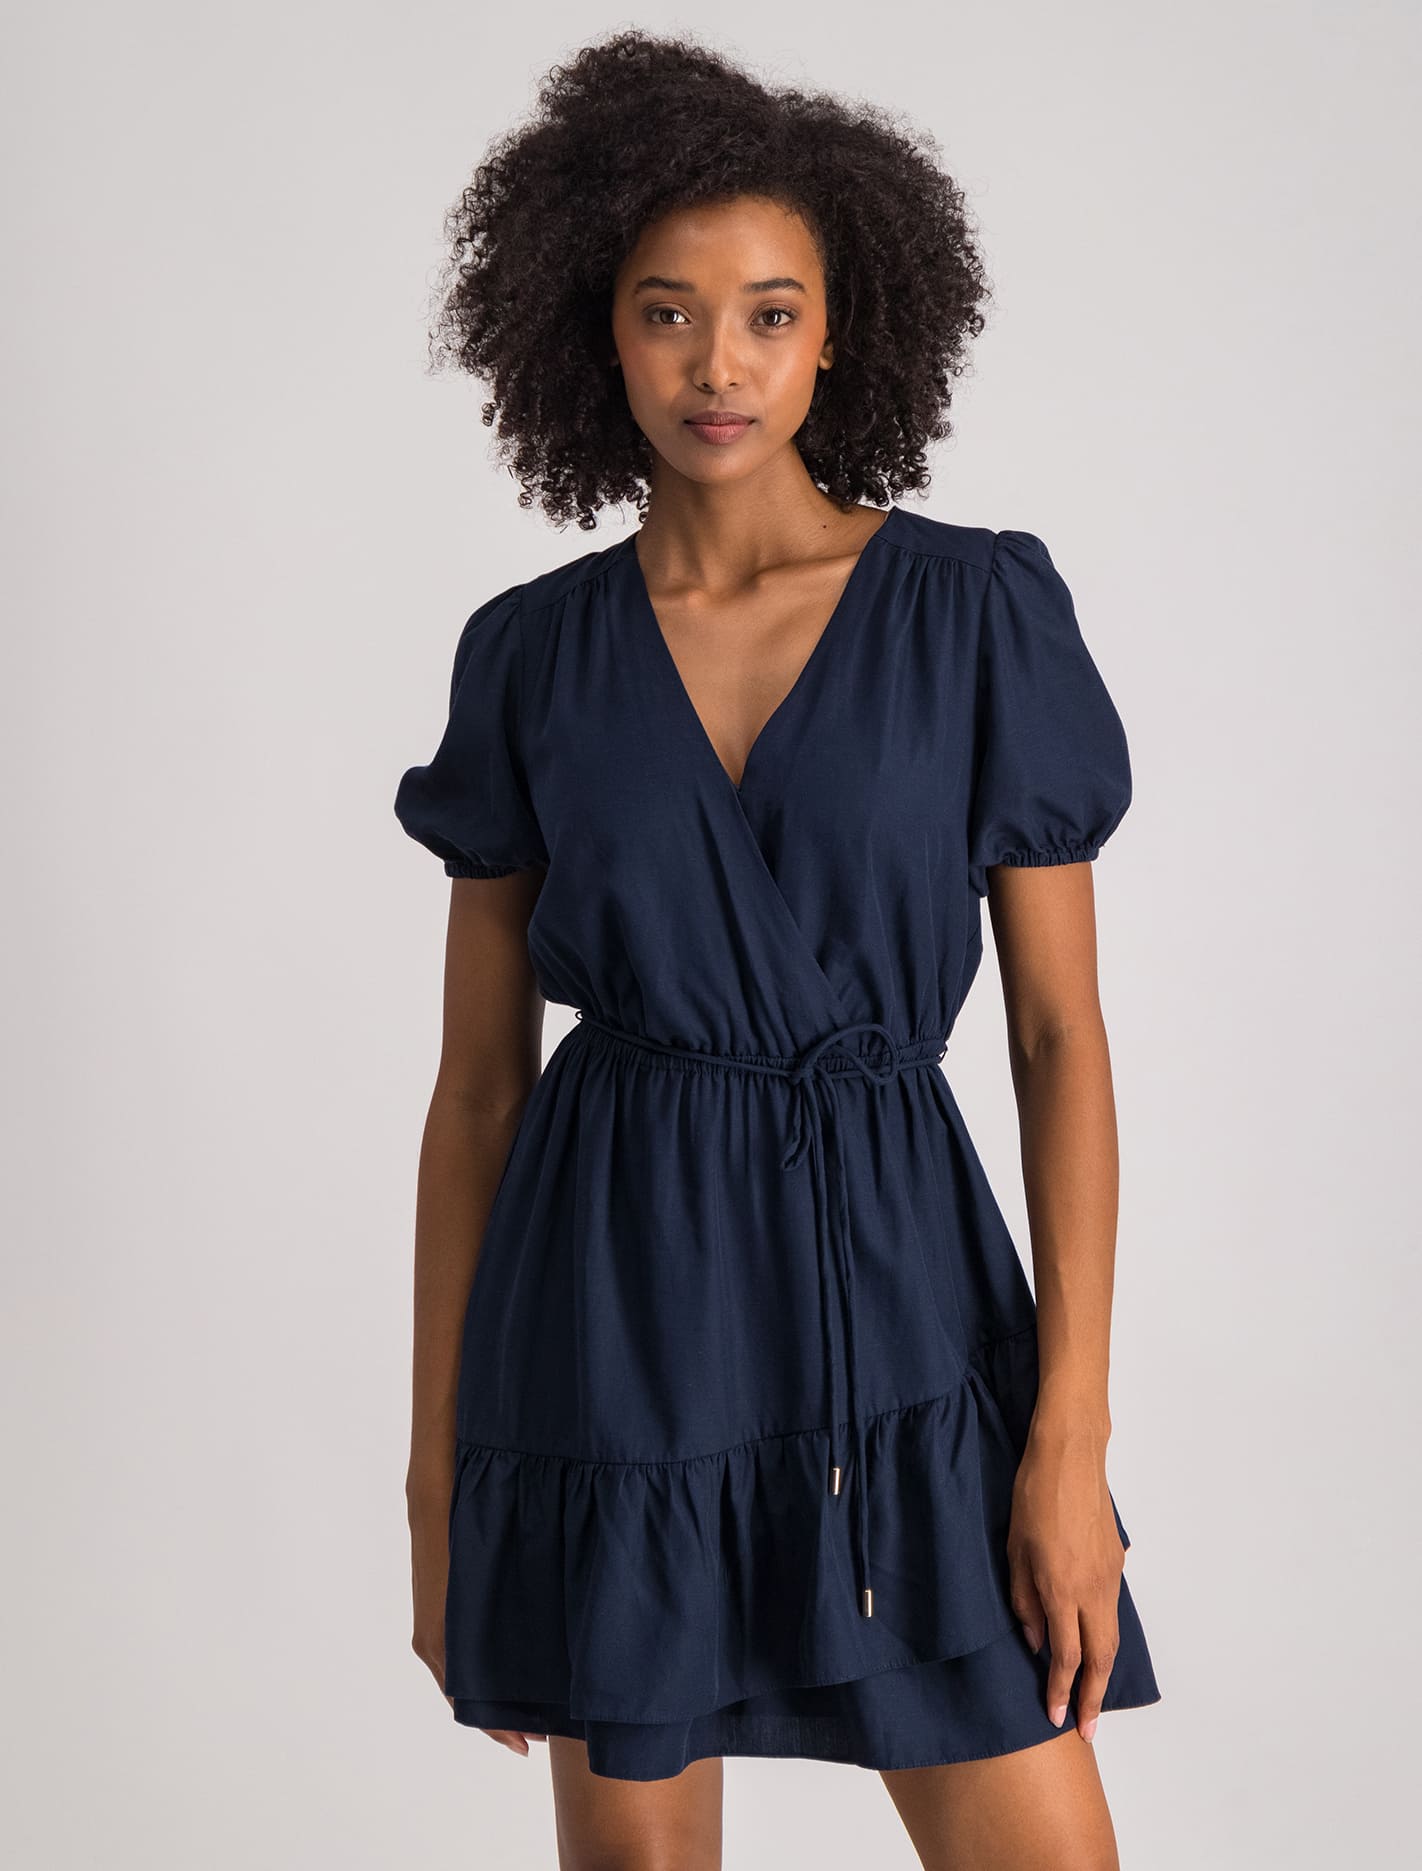 Forever New Dresses | Shop Our Seasonal Linen Dresses For Women